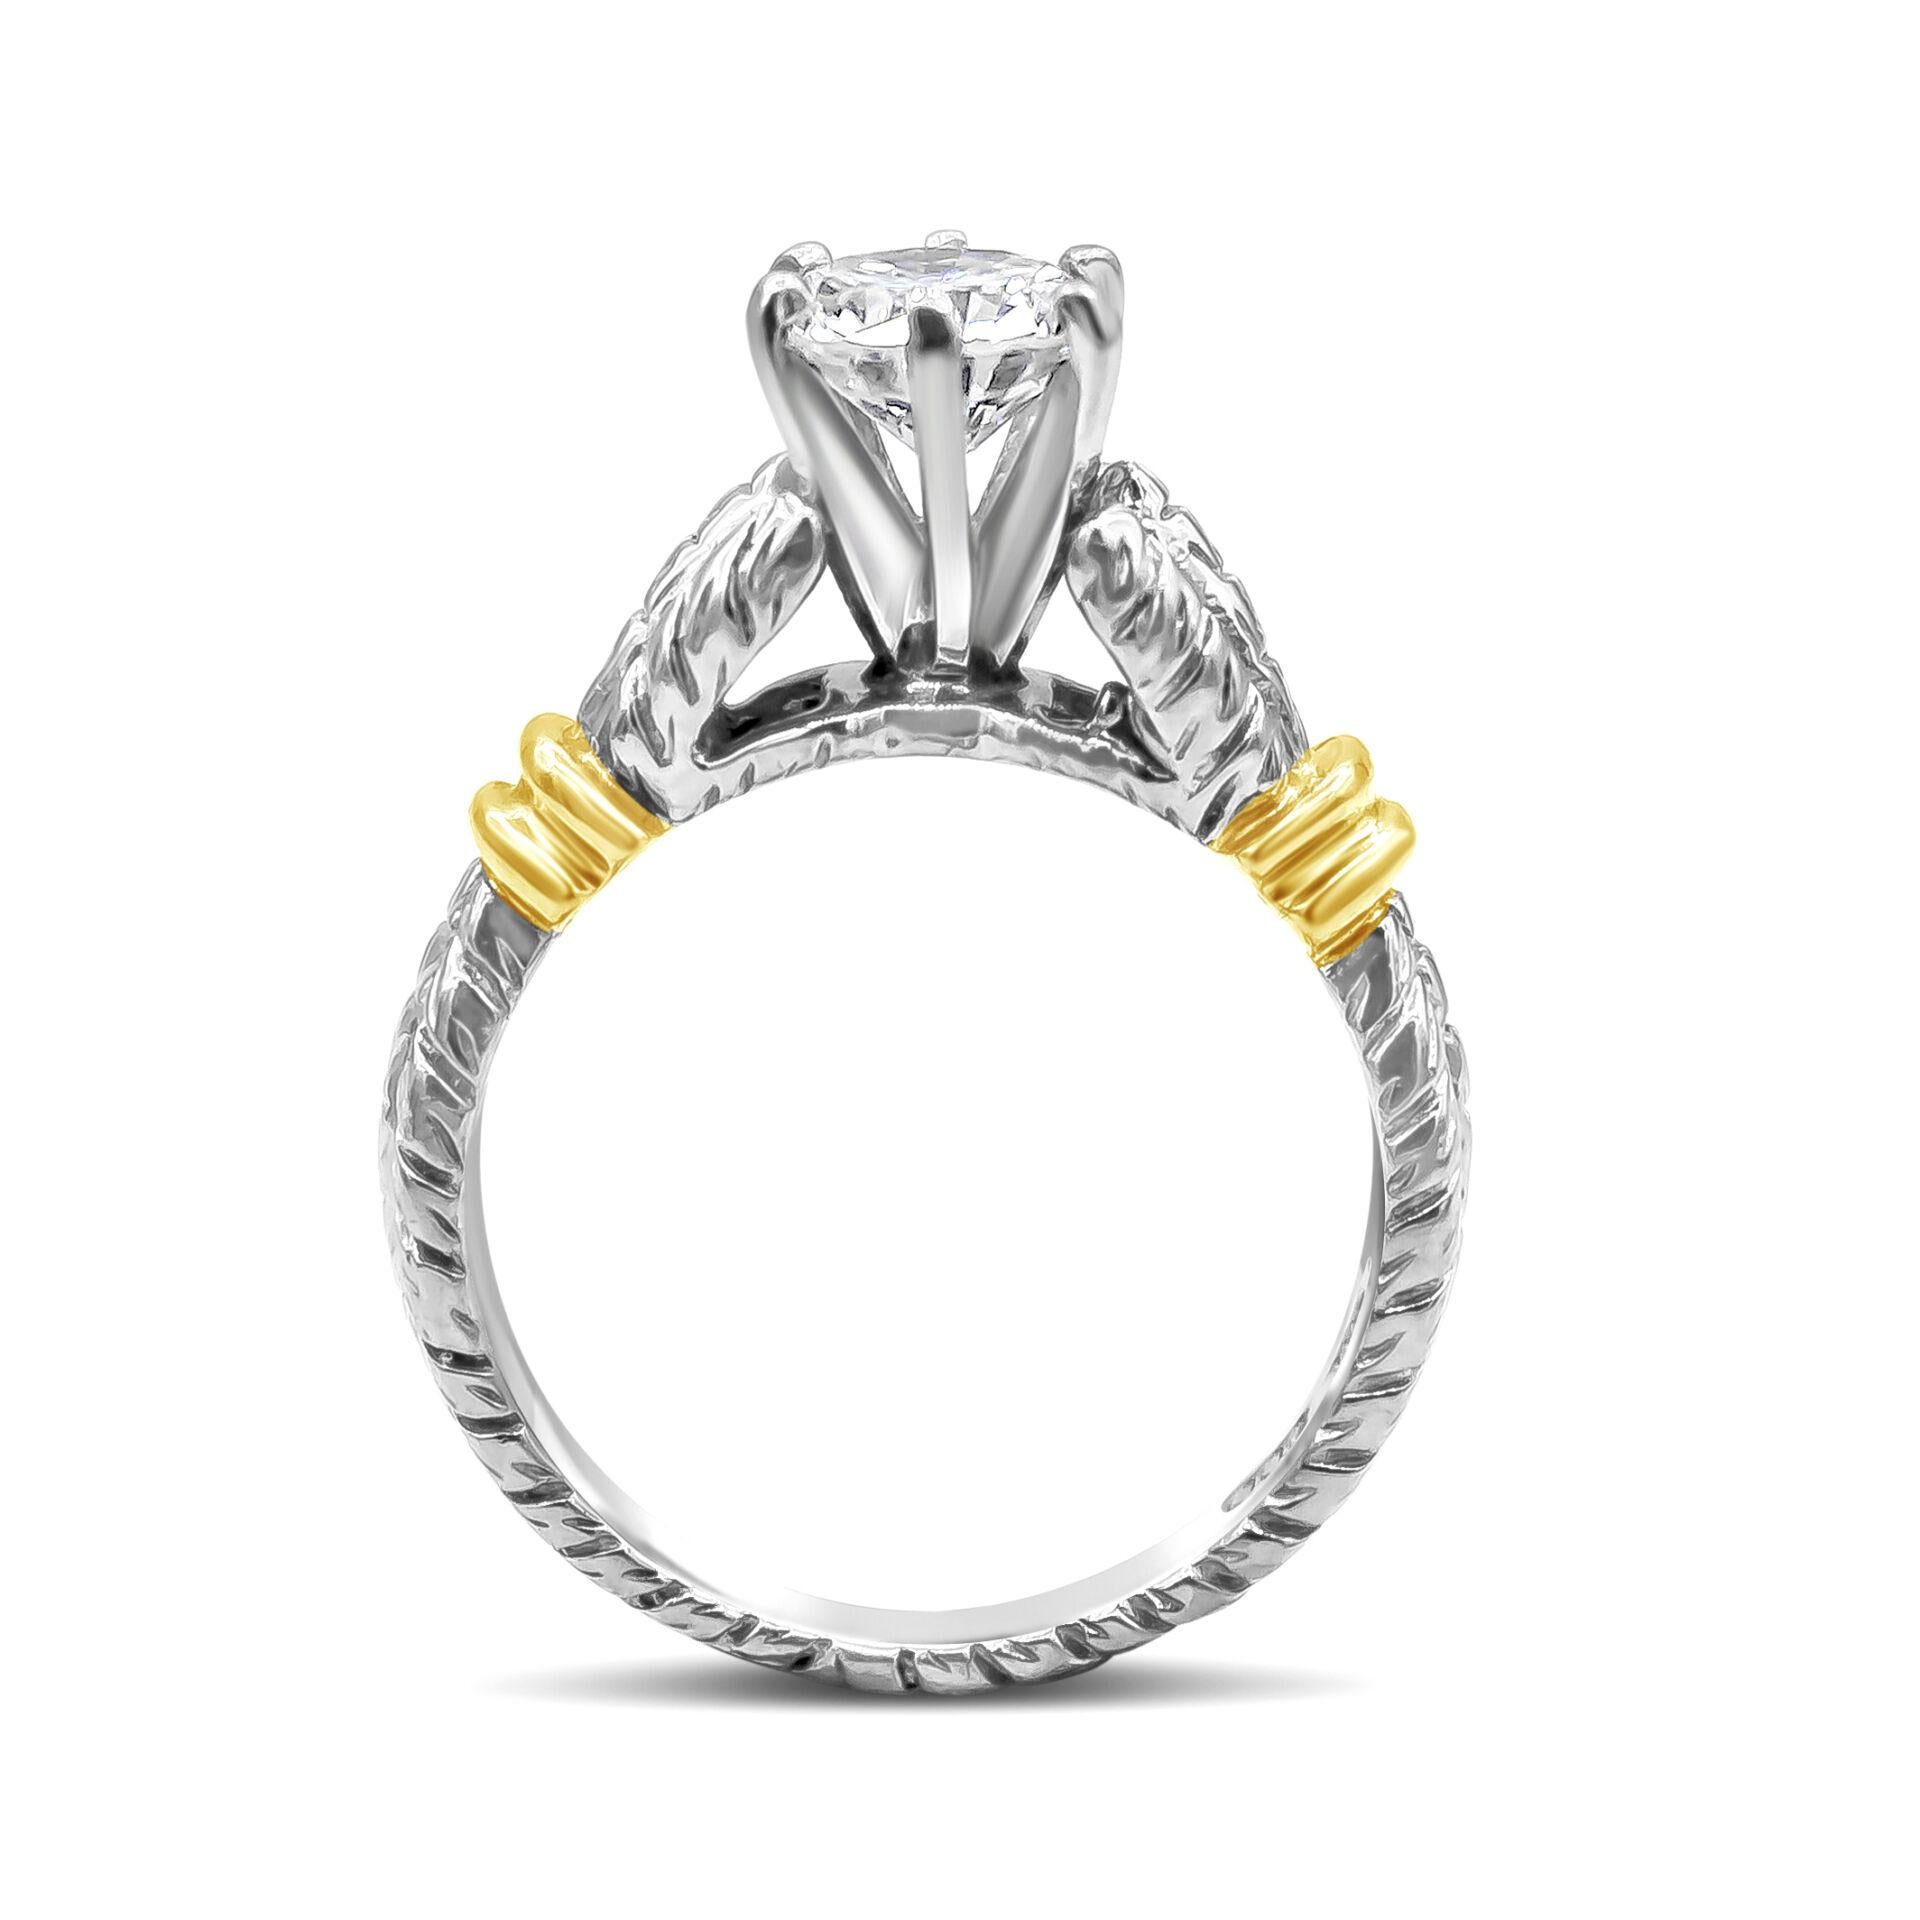 Ein antiker Verlobungsring im römischen Stil mit einem runden Diamanten von 0,91 Karat, Farbe E-F und Reinheit VS2. Hergestellt aus 18K Gelbgold und Platin. Größe 5.5 US

Roman Malakov ist ein Unternehmen, das sich darauf spezialisiert hat, alles zu